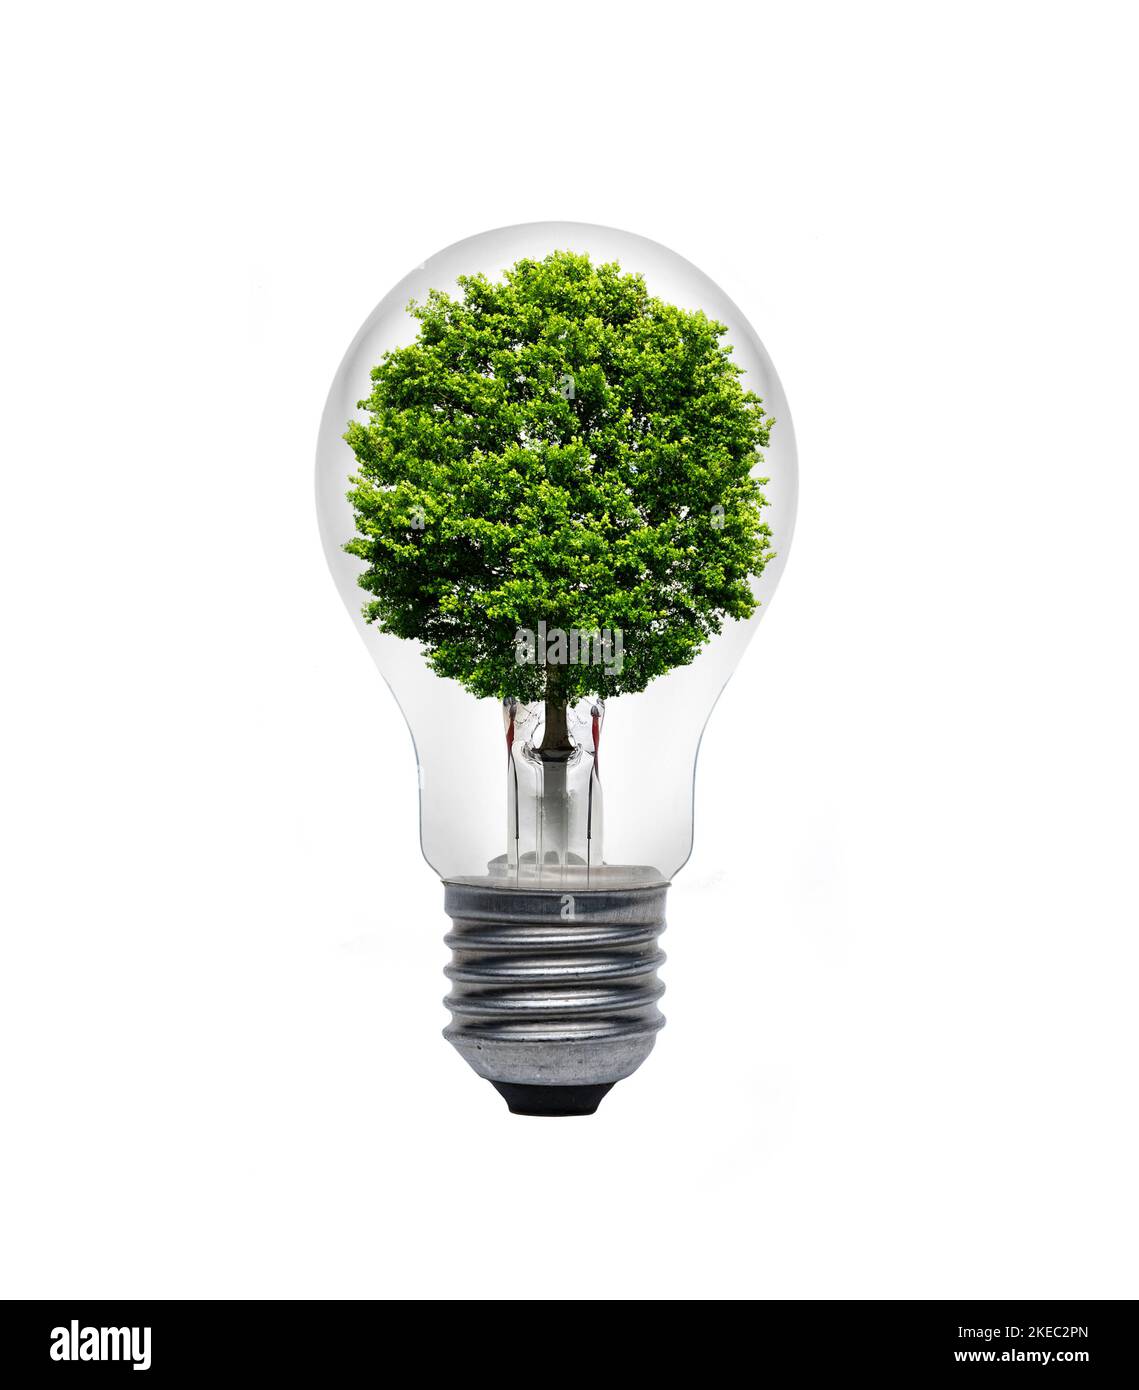 Ampoule avec un arbre vert Banque D'Images